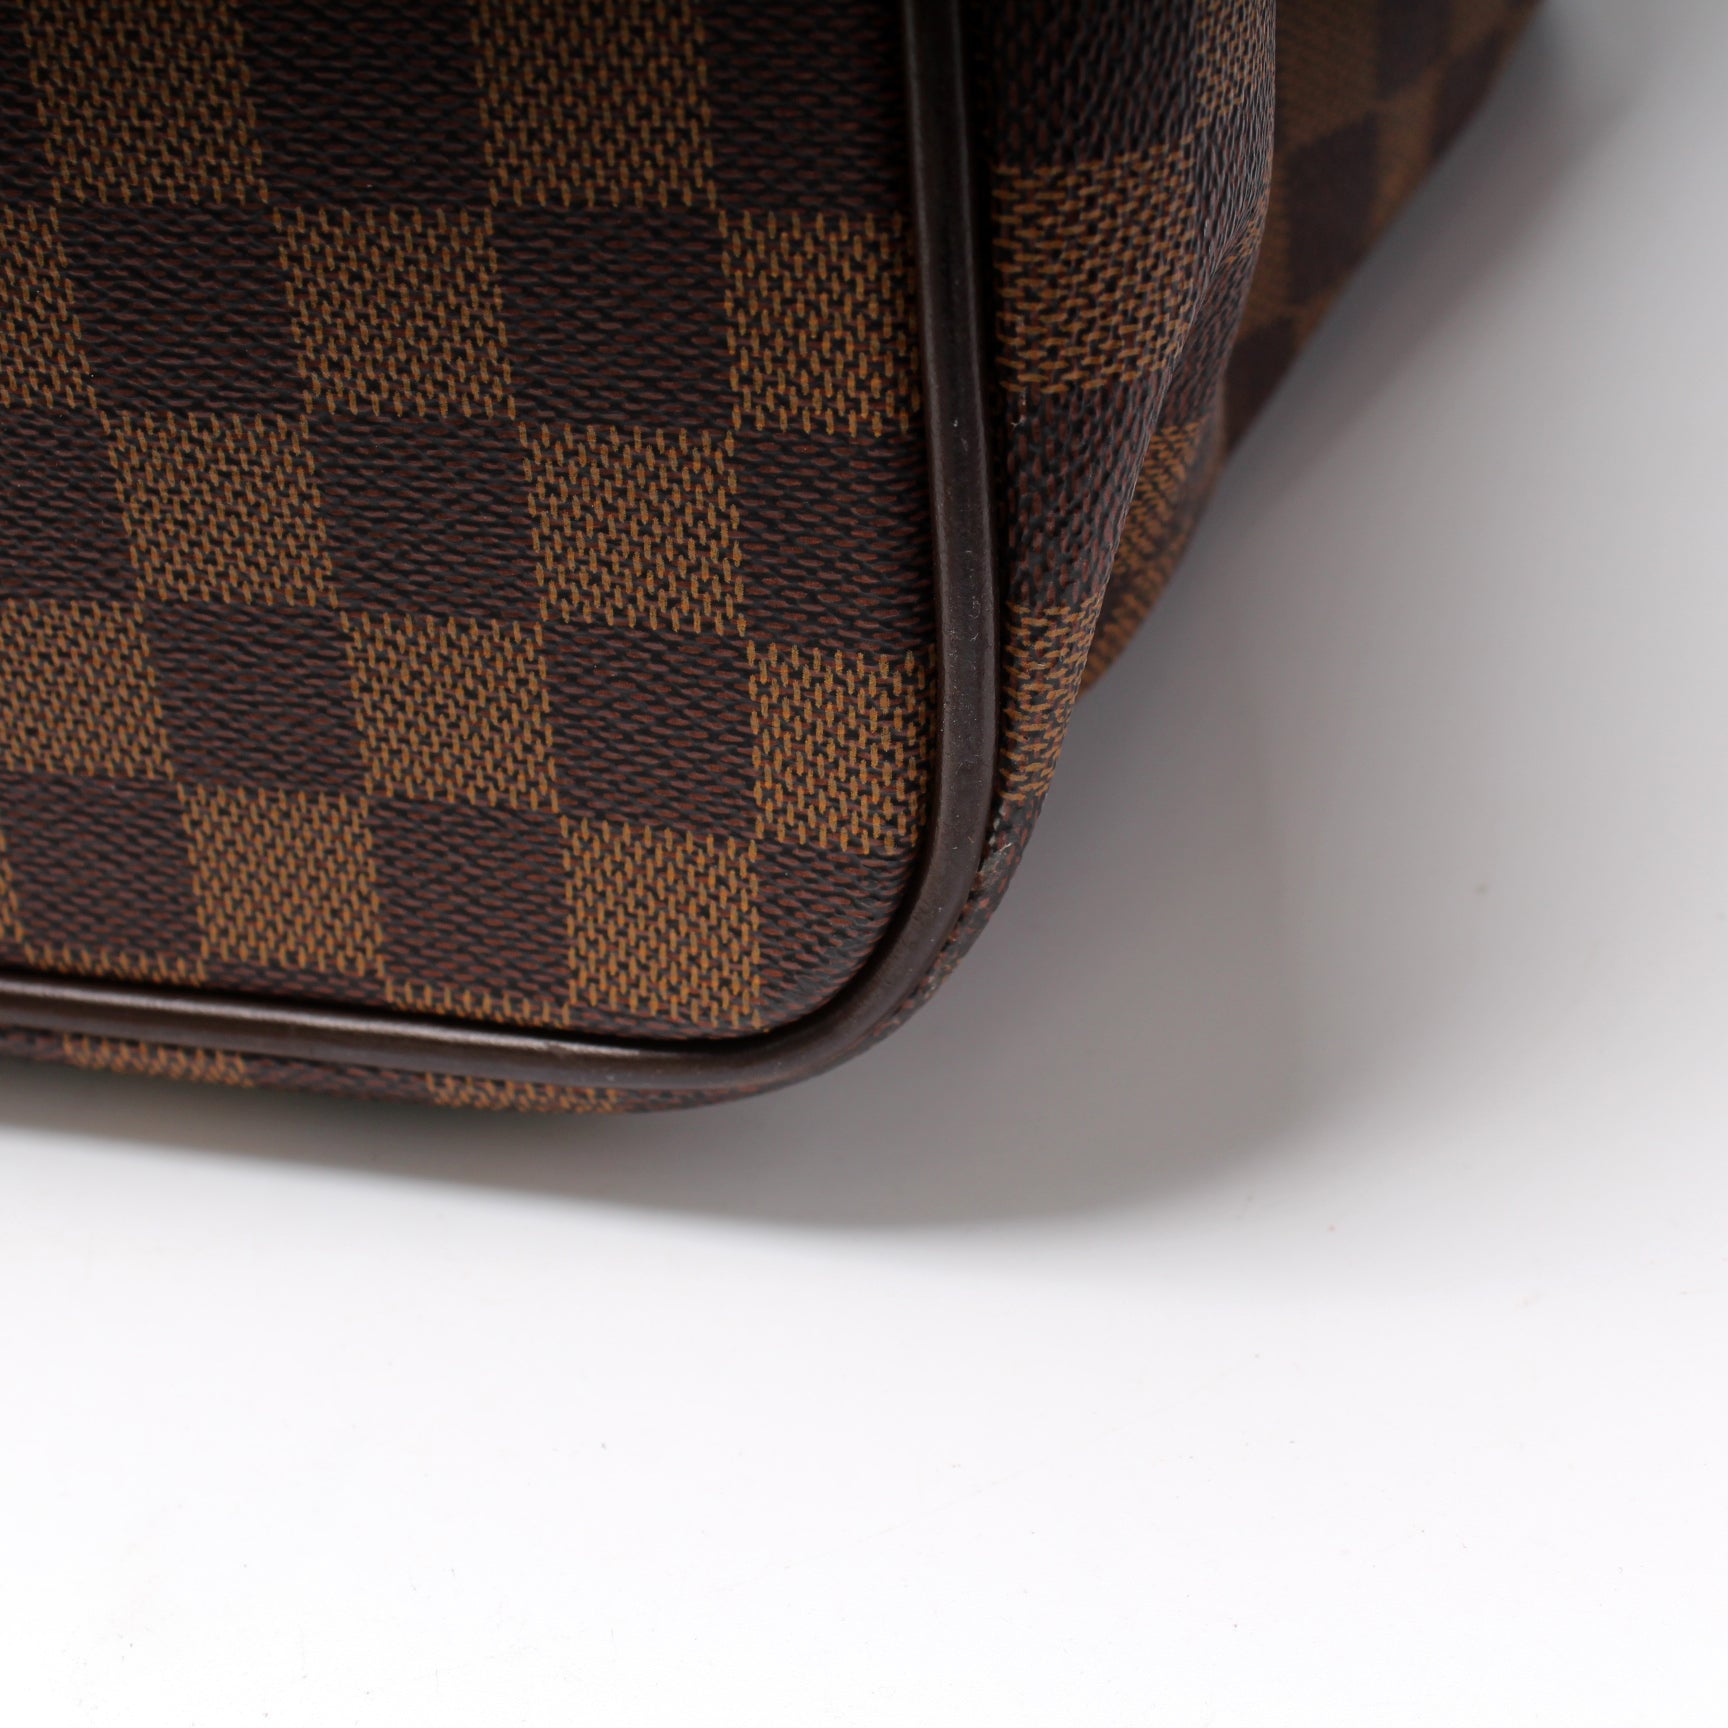 Neo Greenwich Damier Graphite – Keeks Designer Handbags